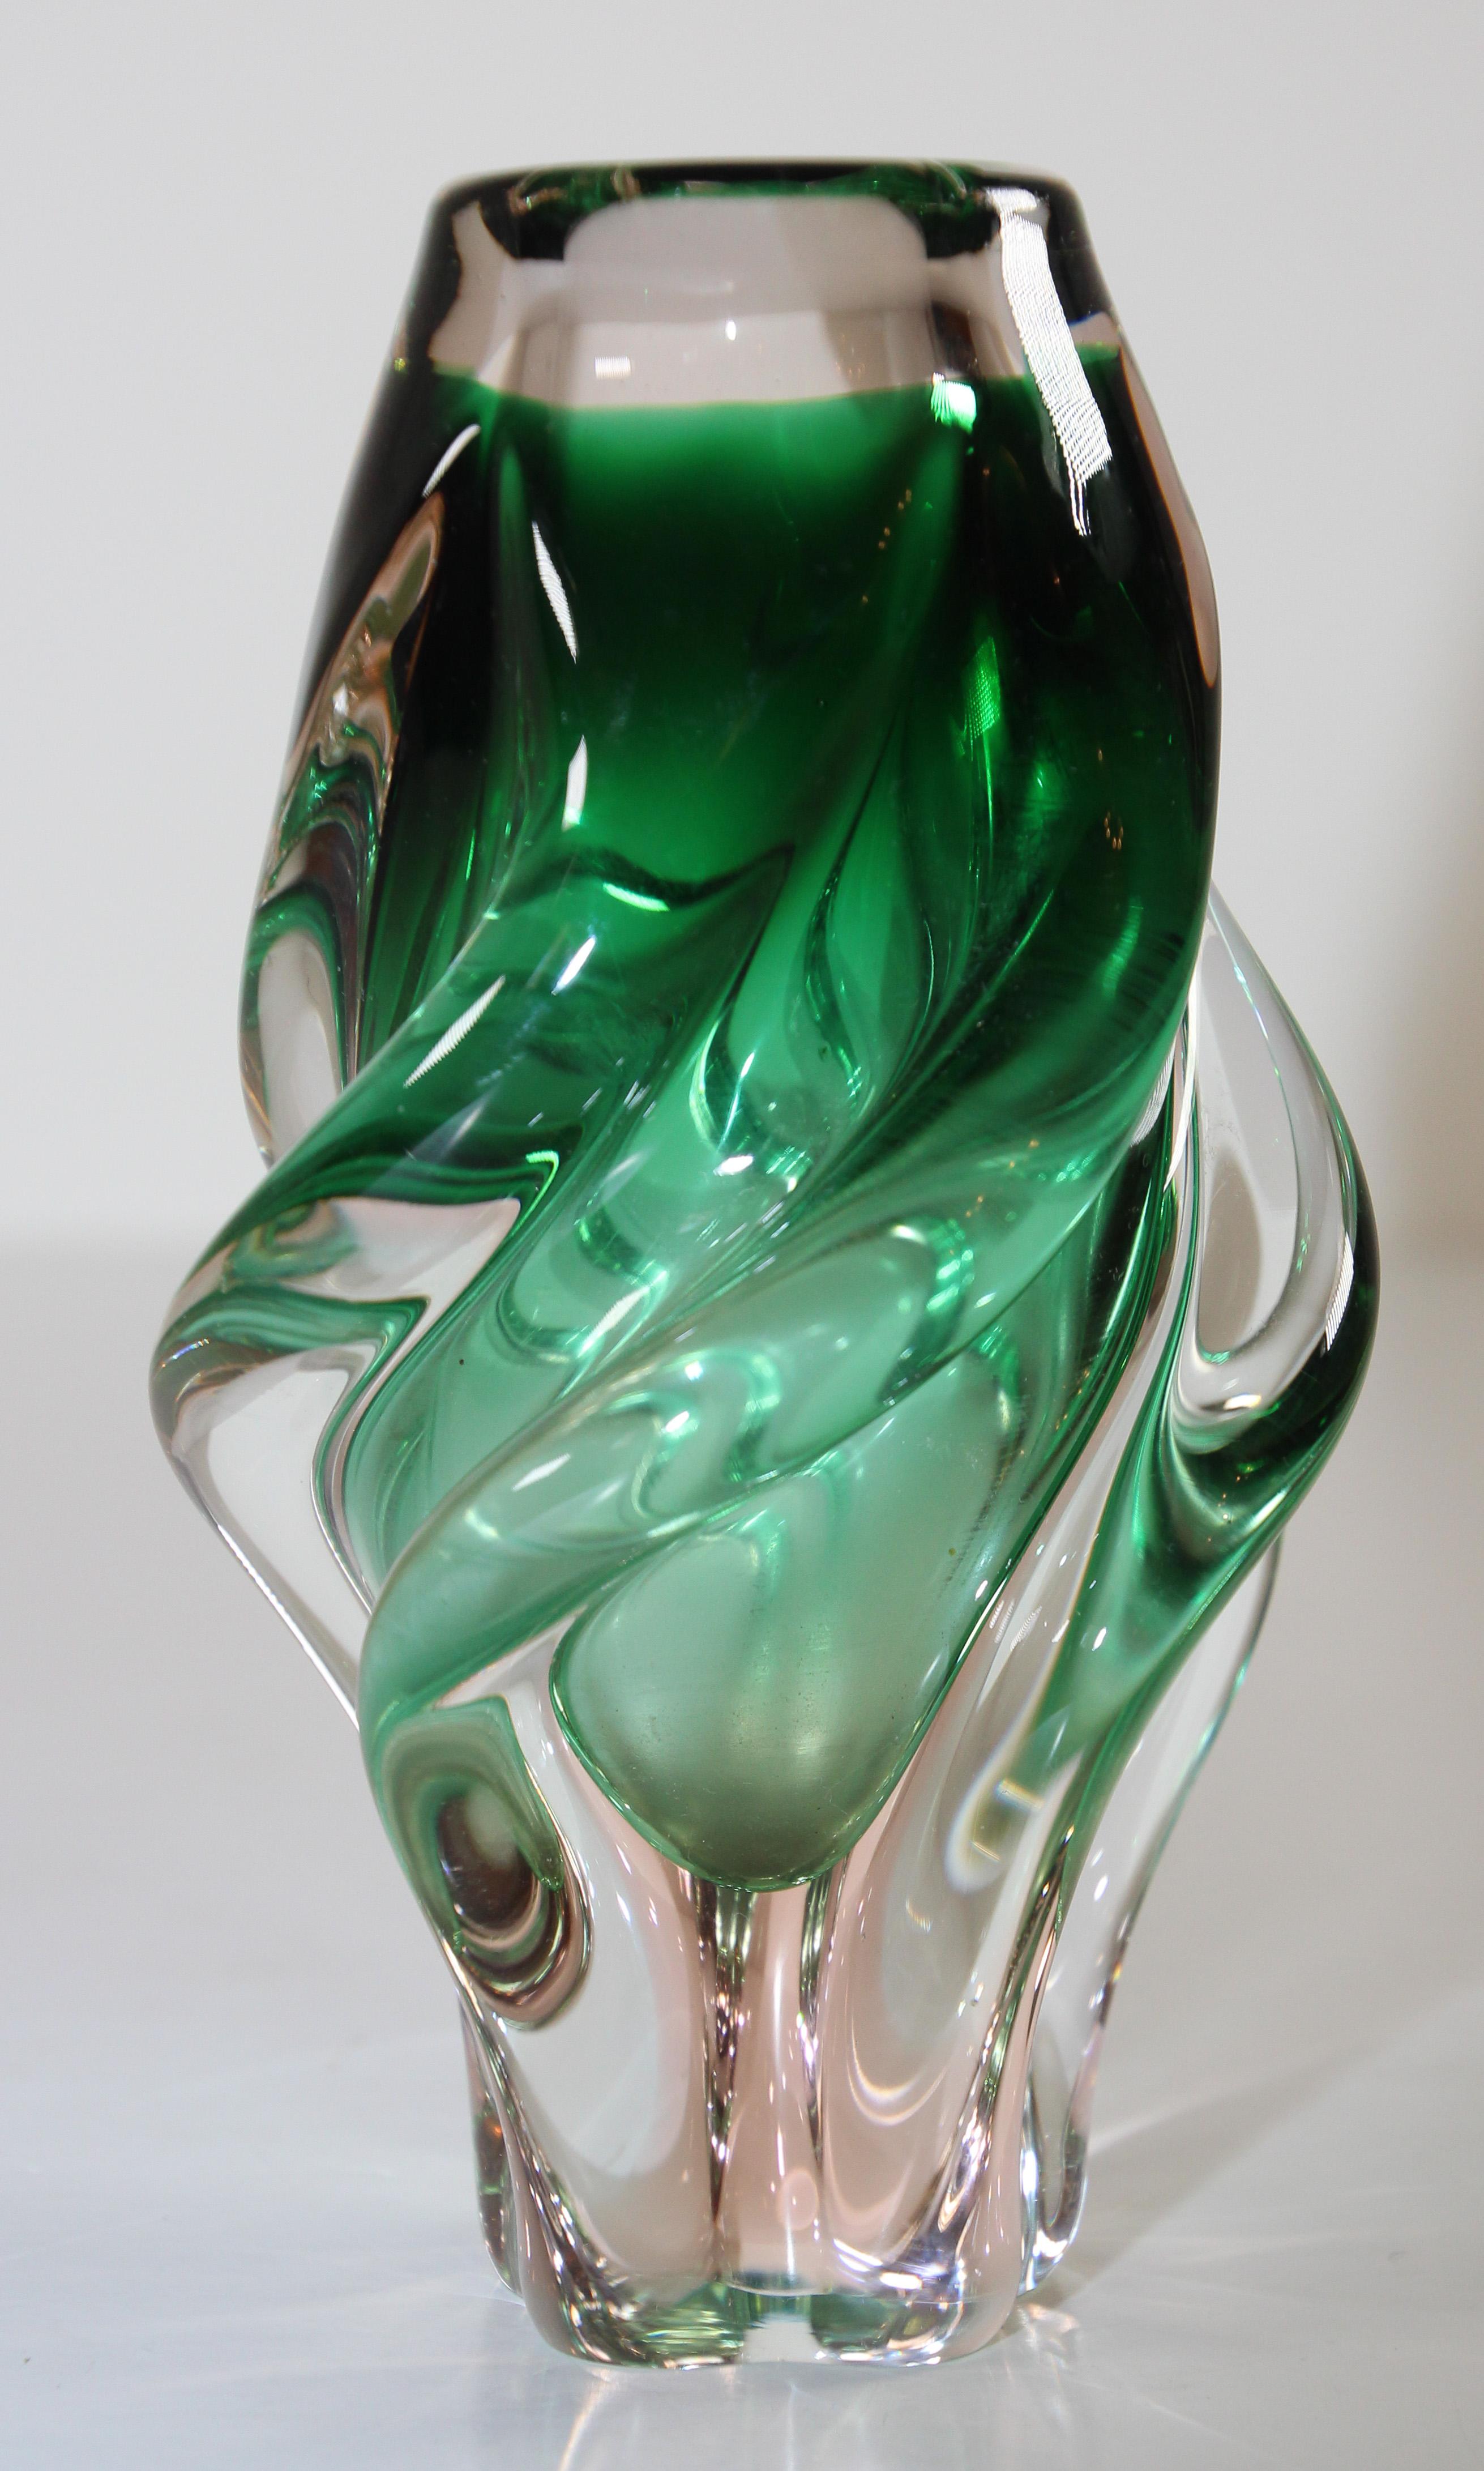 Vase en verre d'art soufflé à la bouche de style Murano en forme de torsion verte.
Le talentueux artisan récupère les techniques traditionnelles de soufflage du verre de Murano, en Italie, en utilisant des pigments pour donner à ce vase des nuances